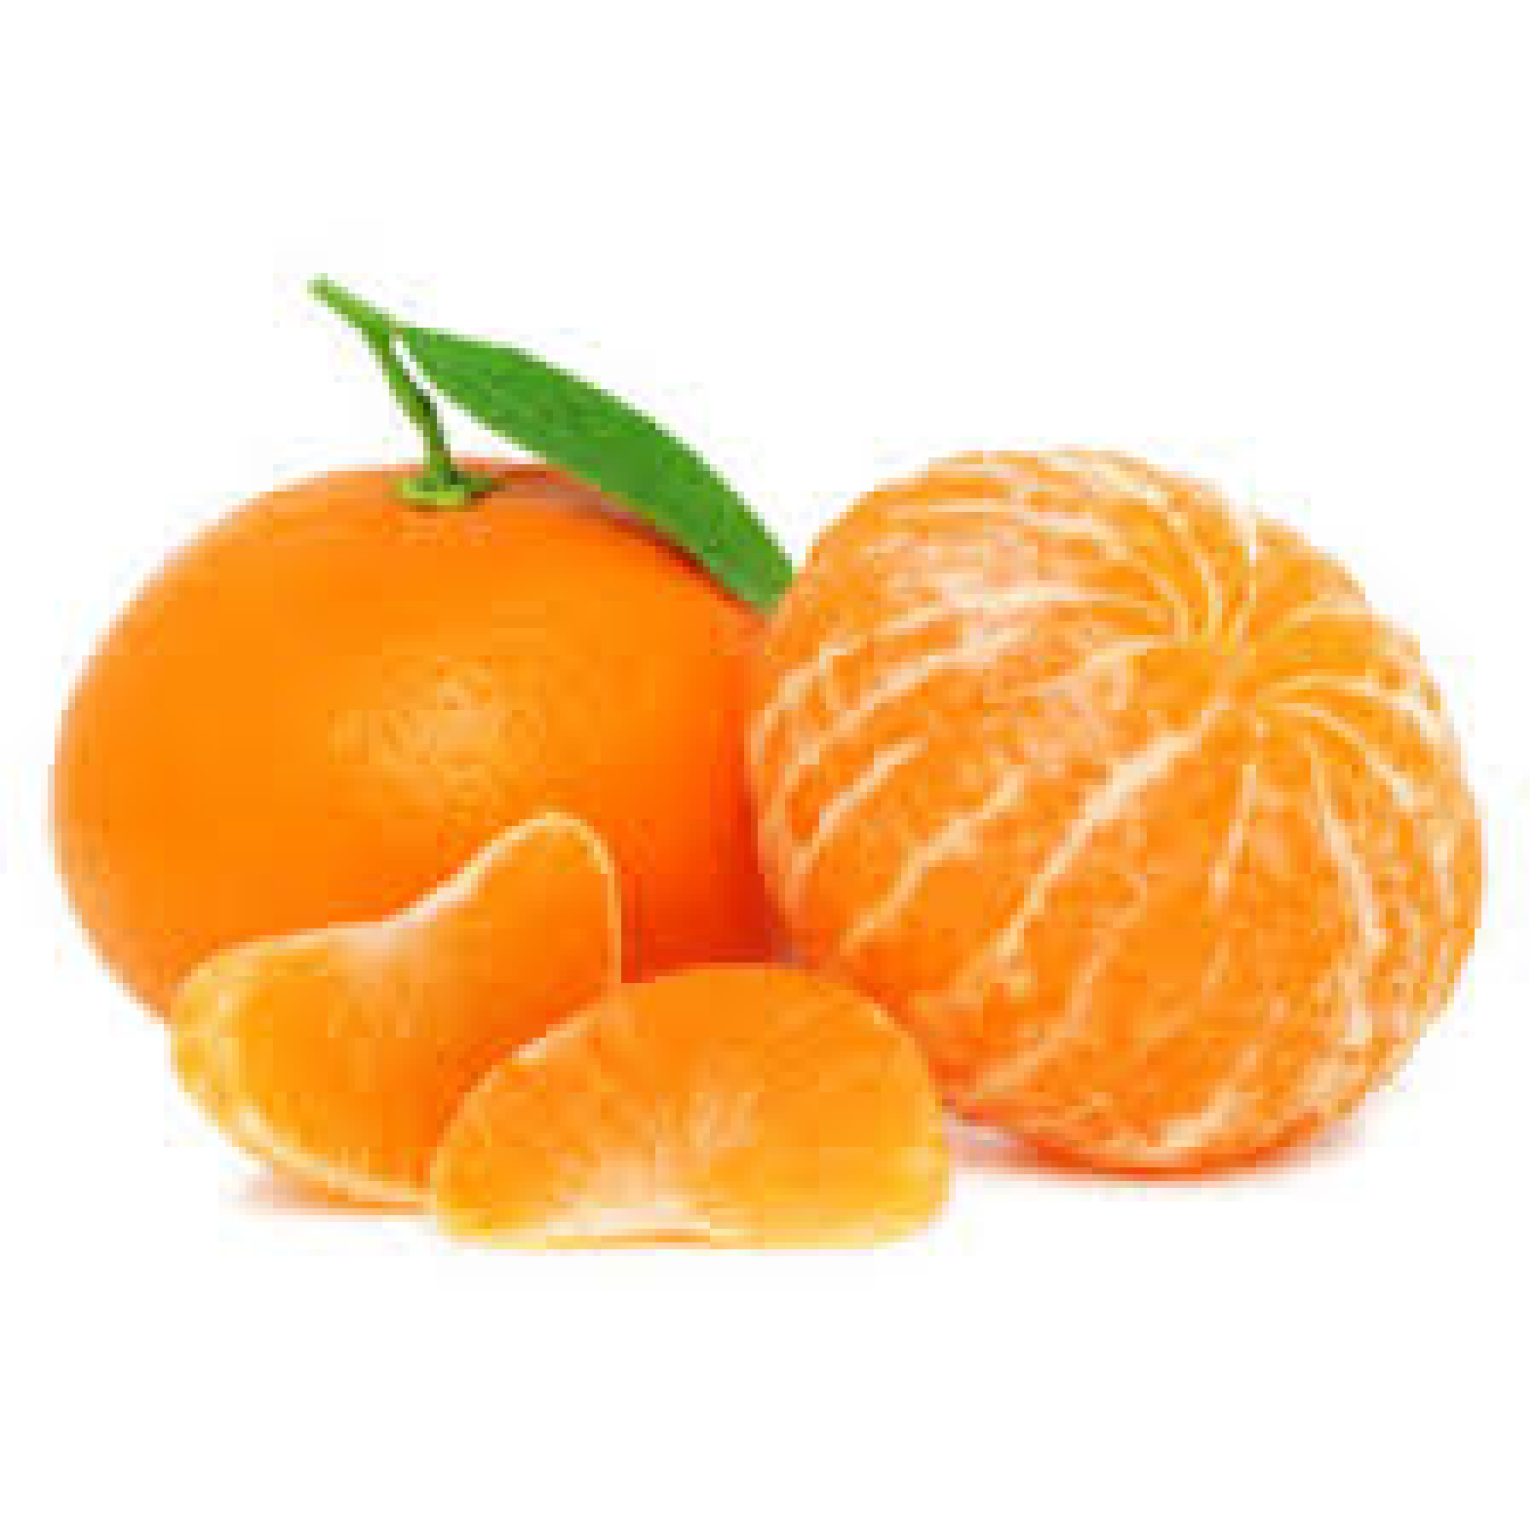 vitamin c in clementines vs oranges